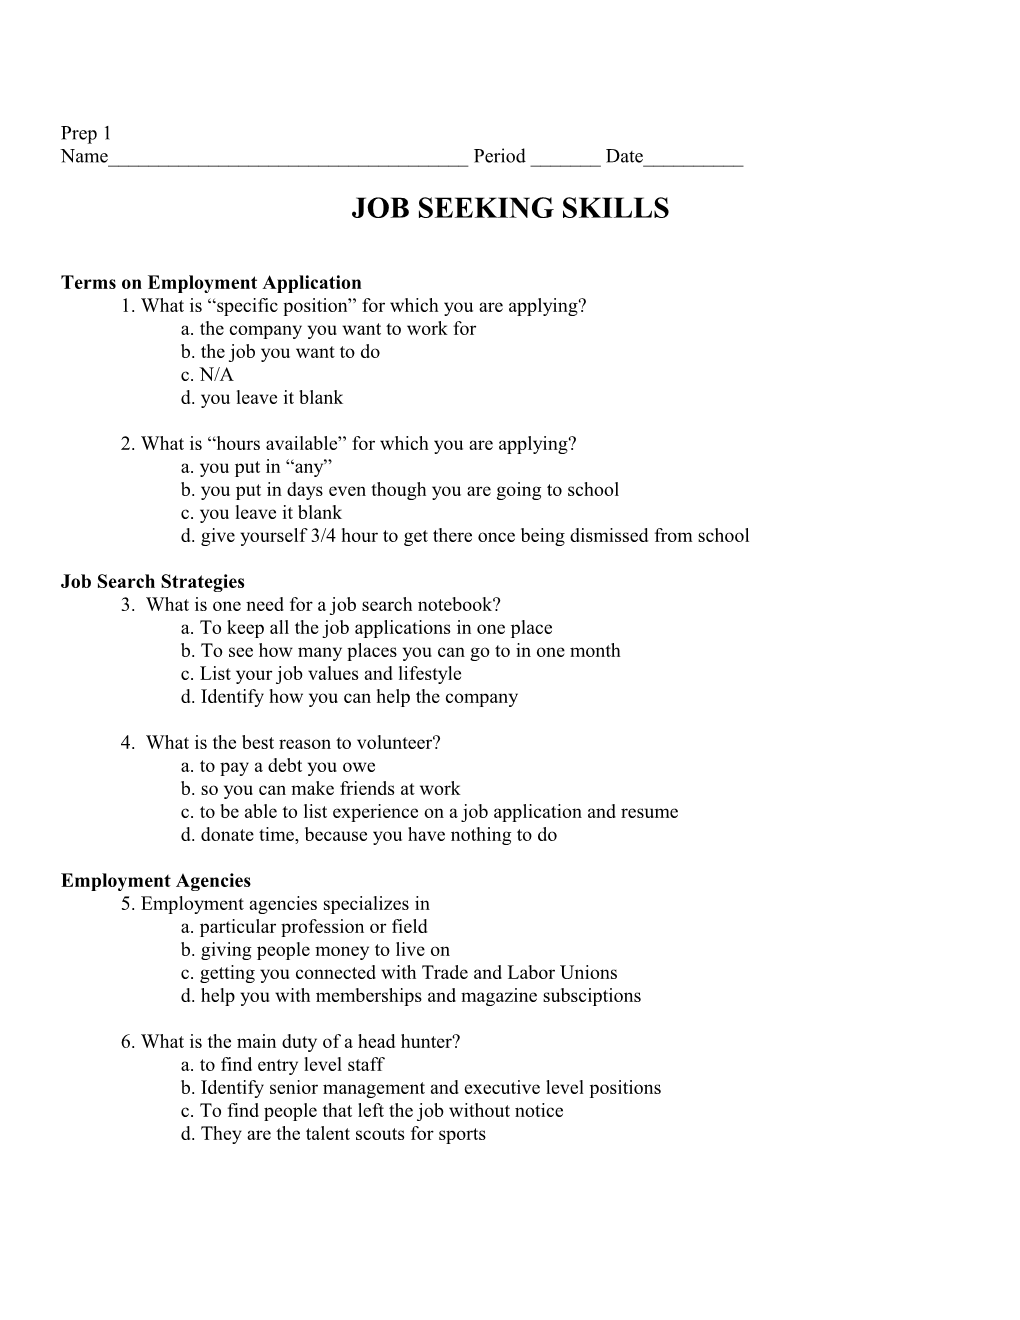 Job Seeking Skills